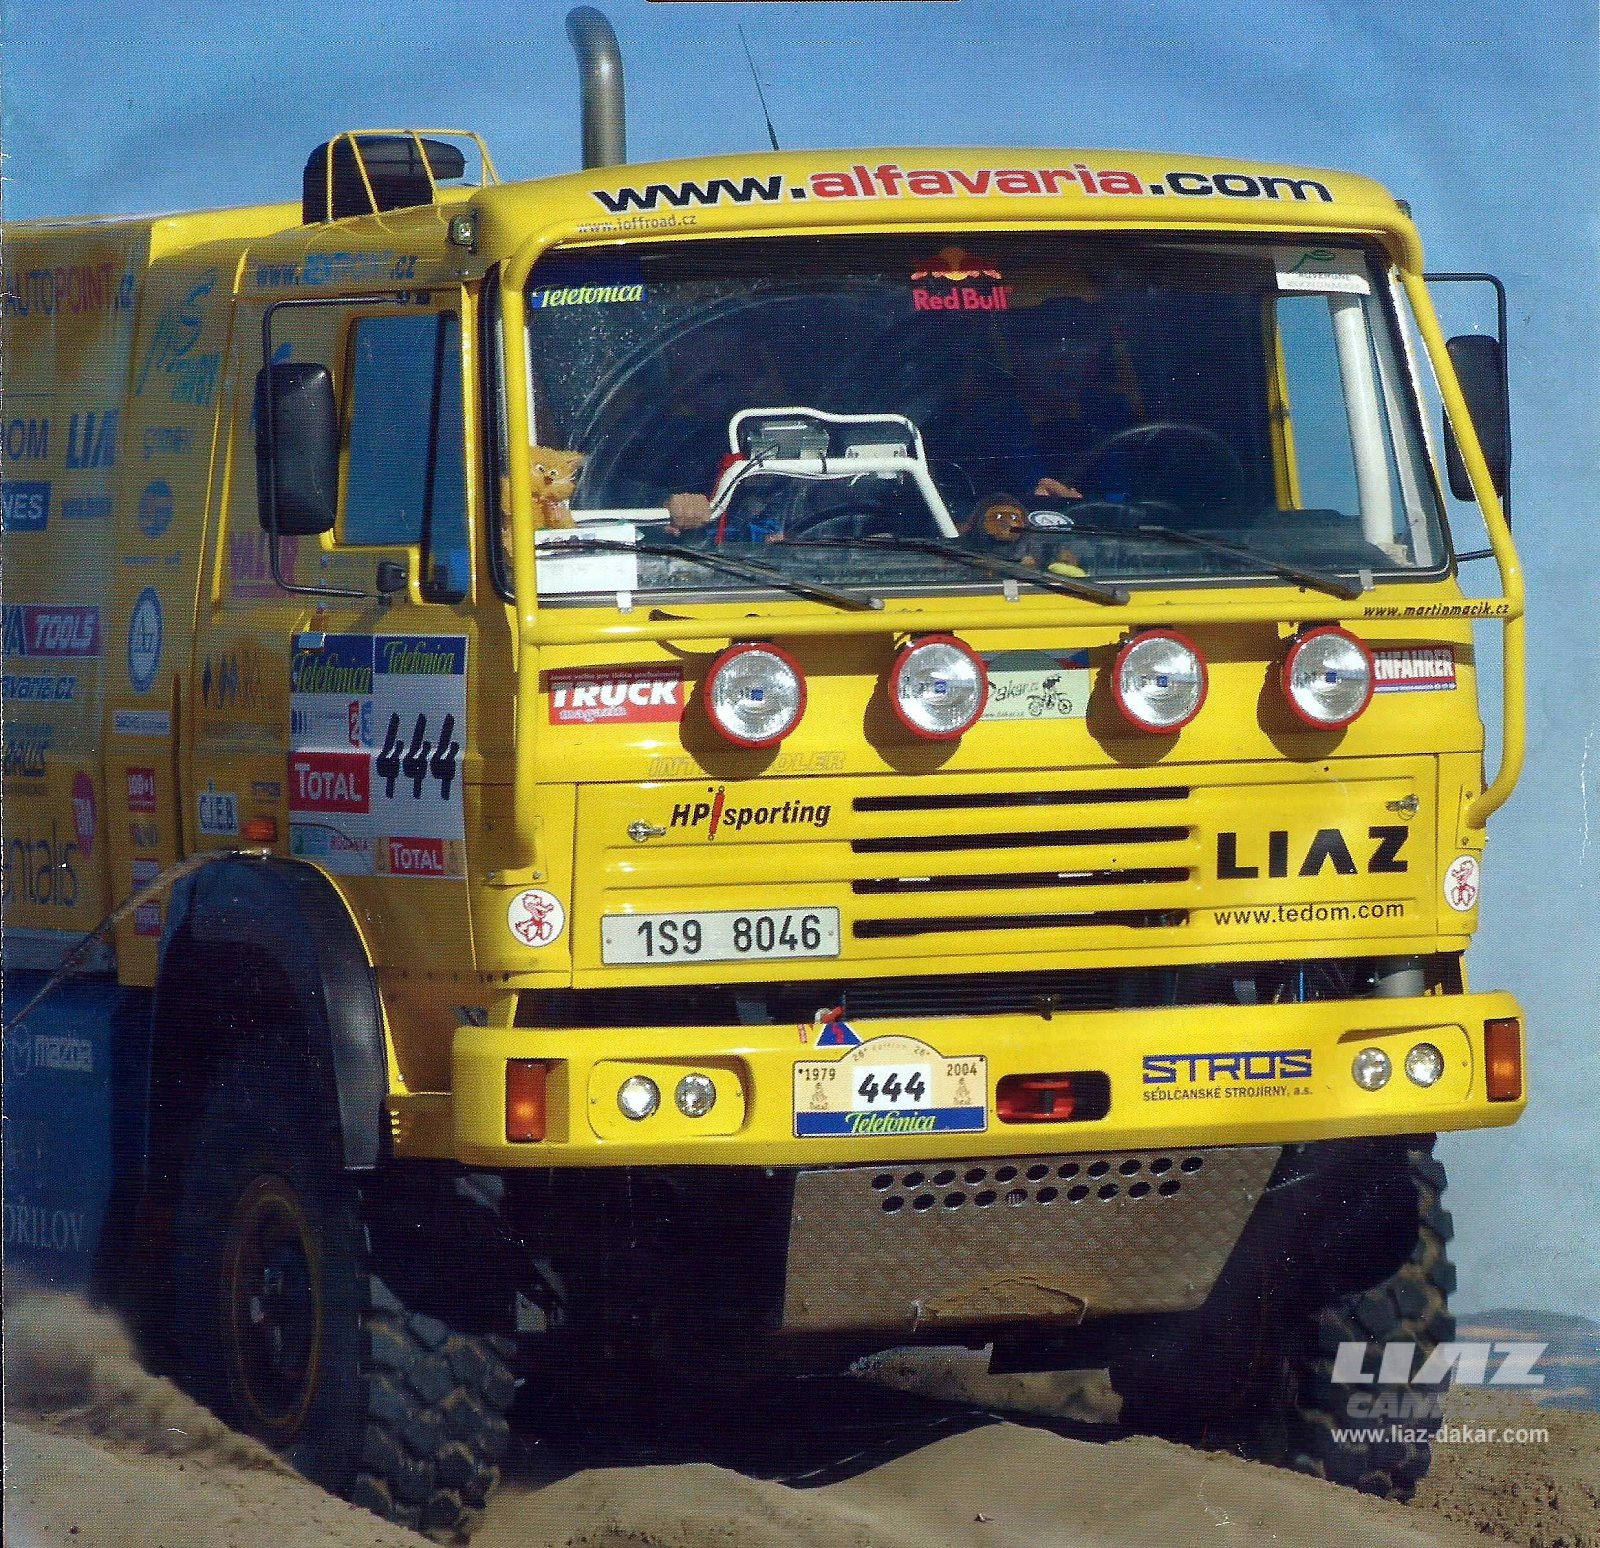 LIAZ Dakar 2004